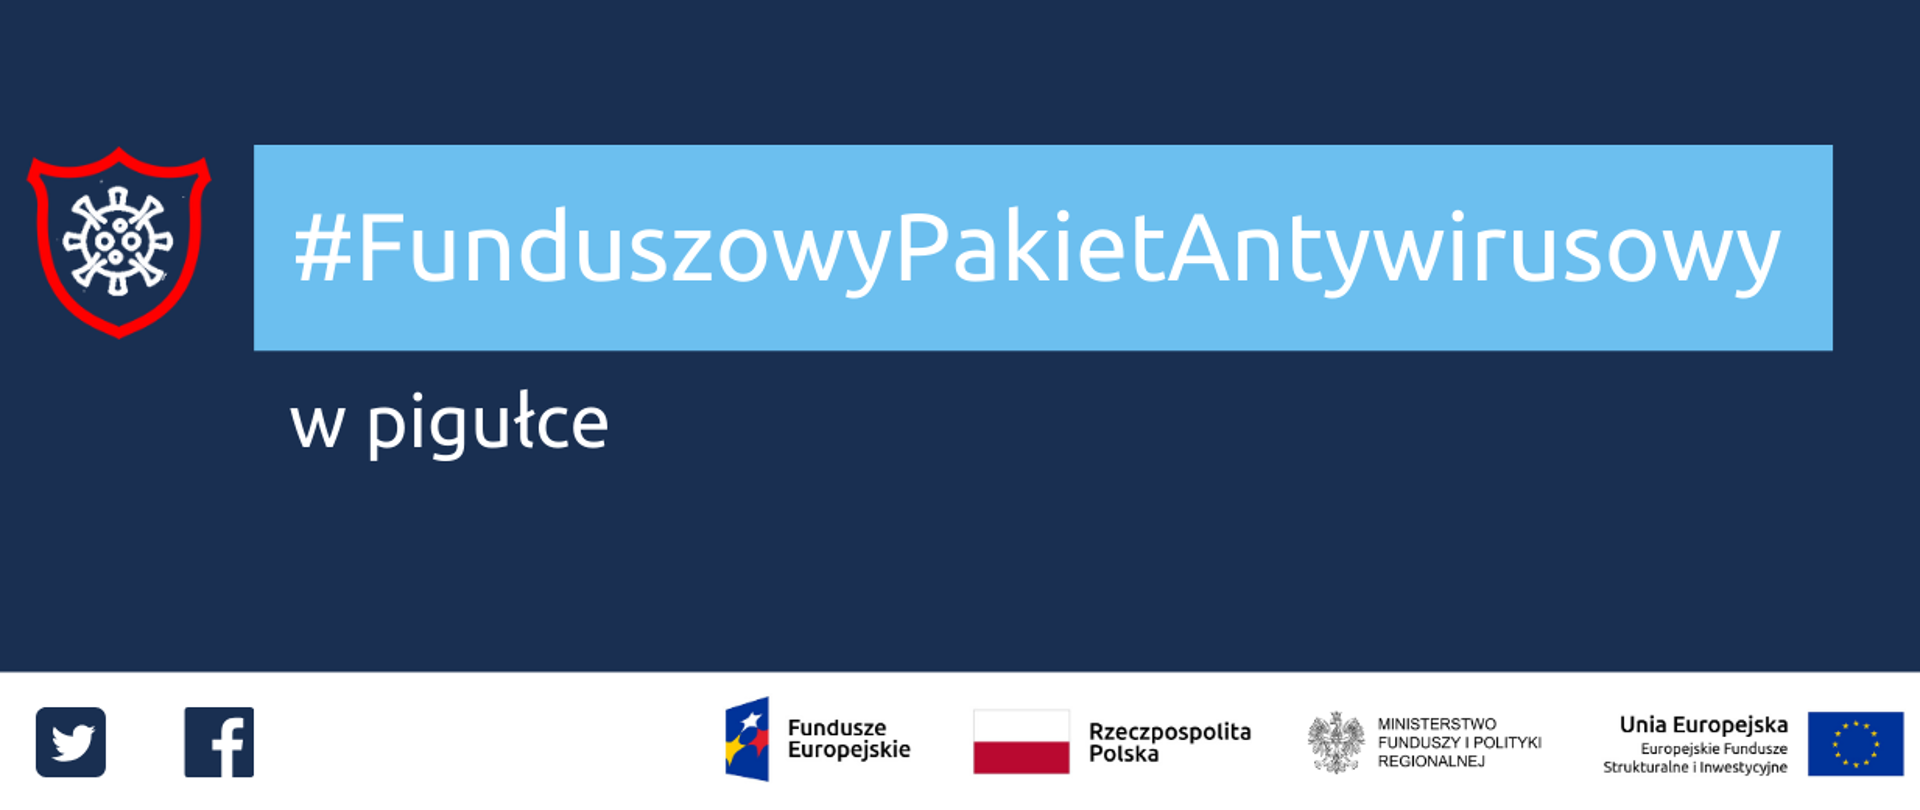 Napis: Funduszowy Pakiet Antywirusowy w pigułce. Na dole ikonki Facebooka oraz Twittera, logotypy Funduszy Europejskich i Ministerstwa Funduszy i Polityki Regionalnej, flaga Polski.